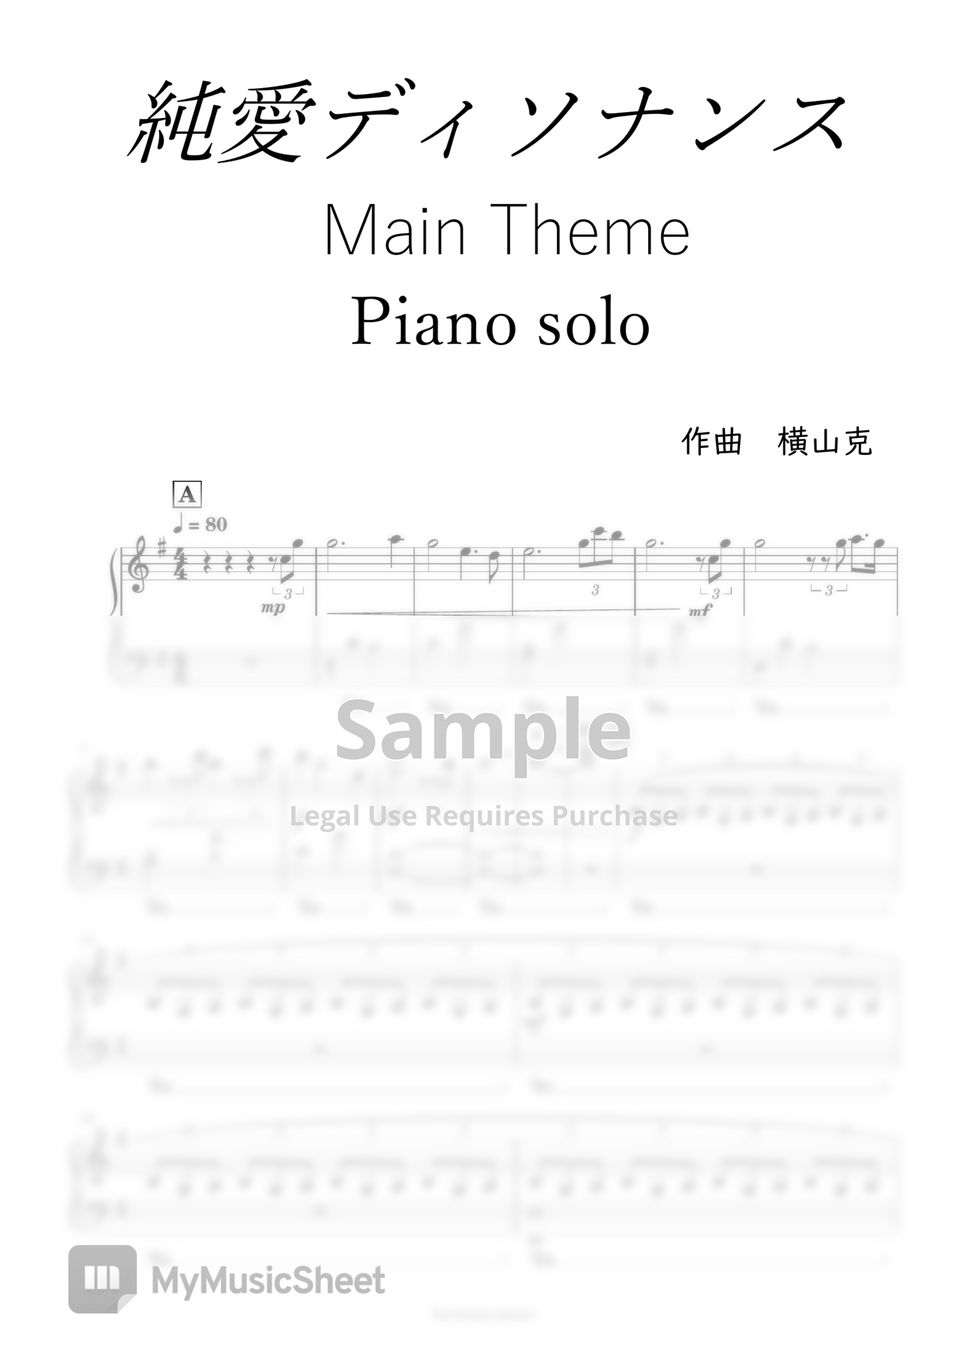 Love Dissonance - Main Theme by harmony piano